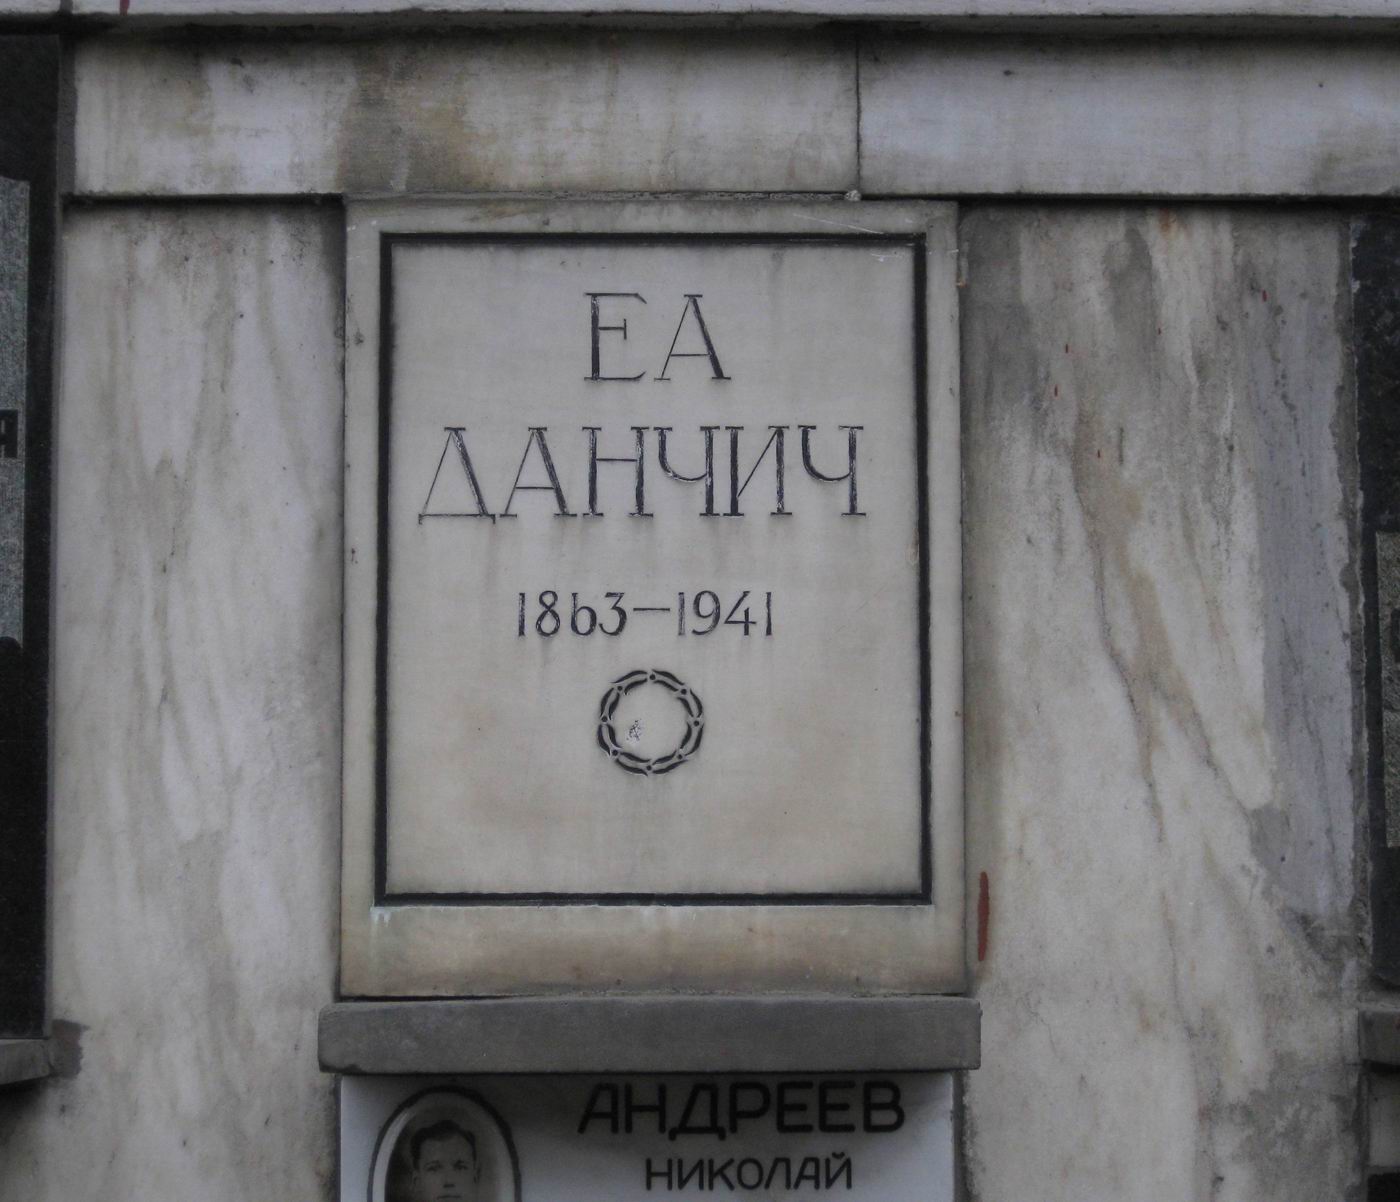 Плита на нише Данчич Е.А. (1863–1941), на Новодевичьем кладбище (колумбарий [89]–3–1).